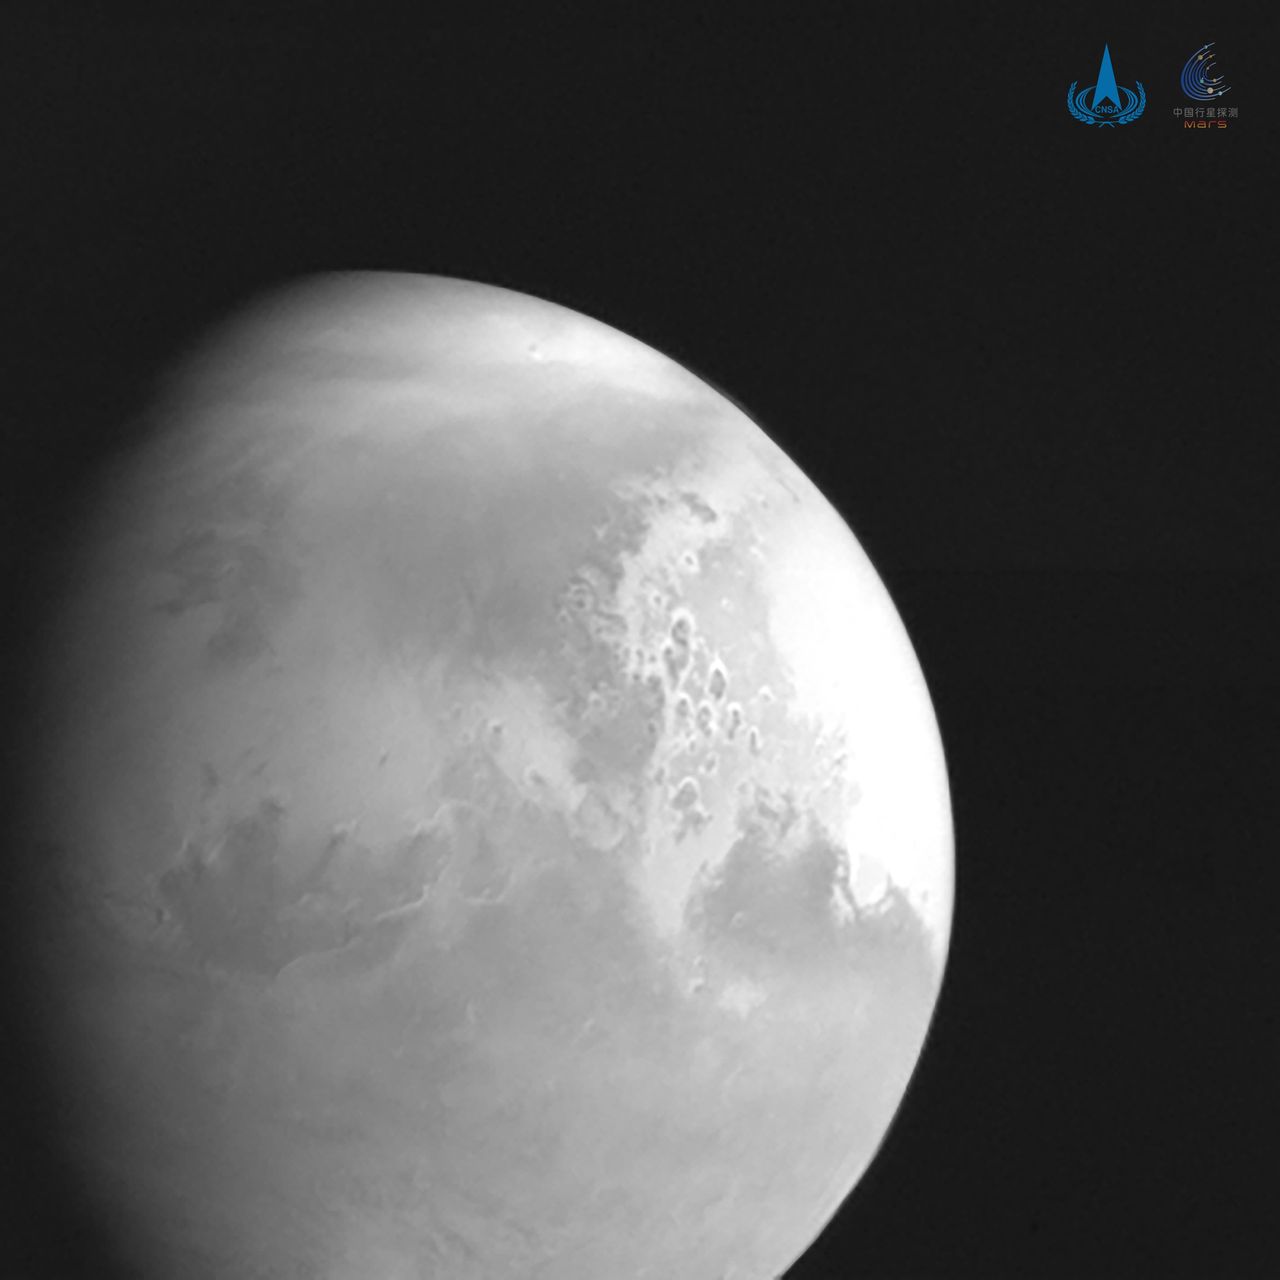 Mars - zdjęcie chińskiej sondy Tianwen-1